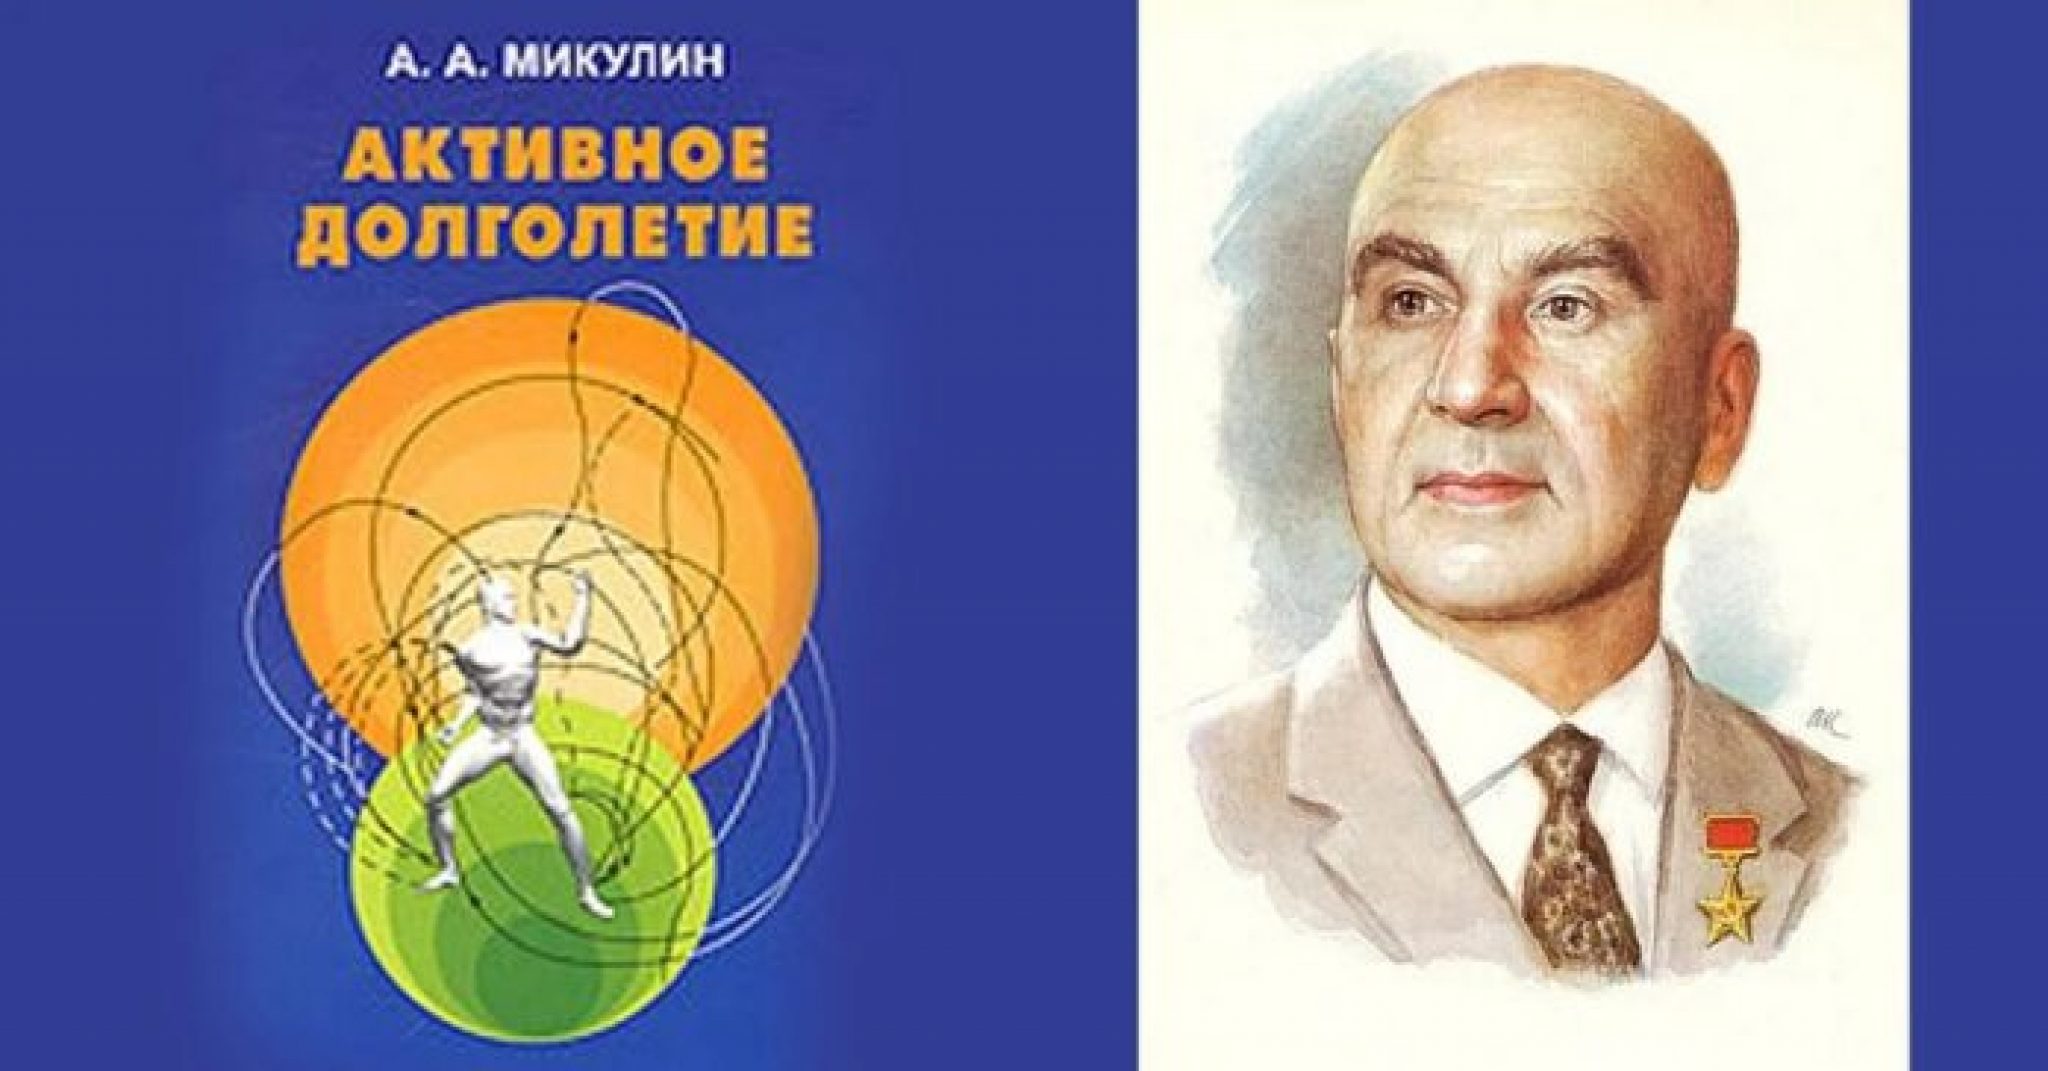 Микулин книга активное долголетие. Активное долголетие книга Академика Микулина. Александрович Микулин (1895-1985).